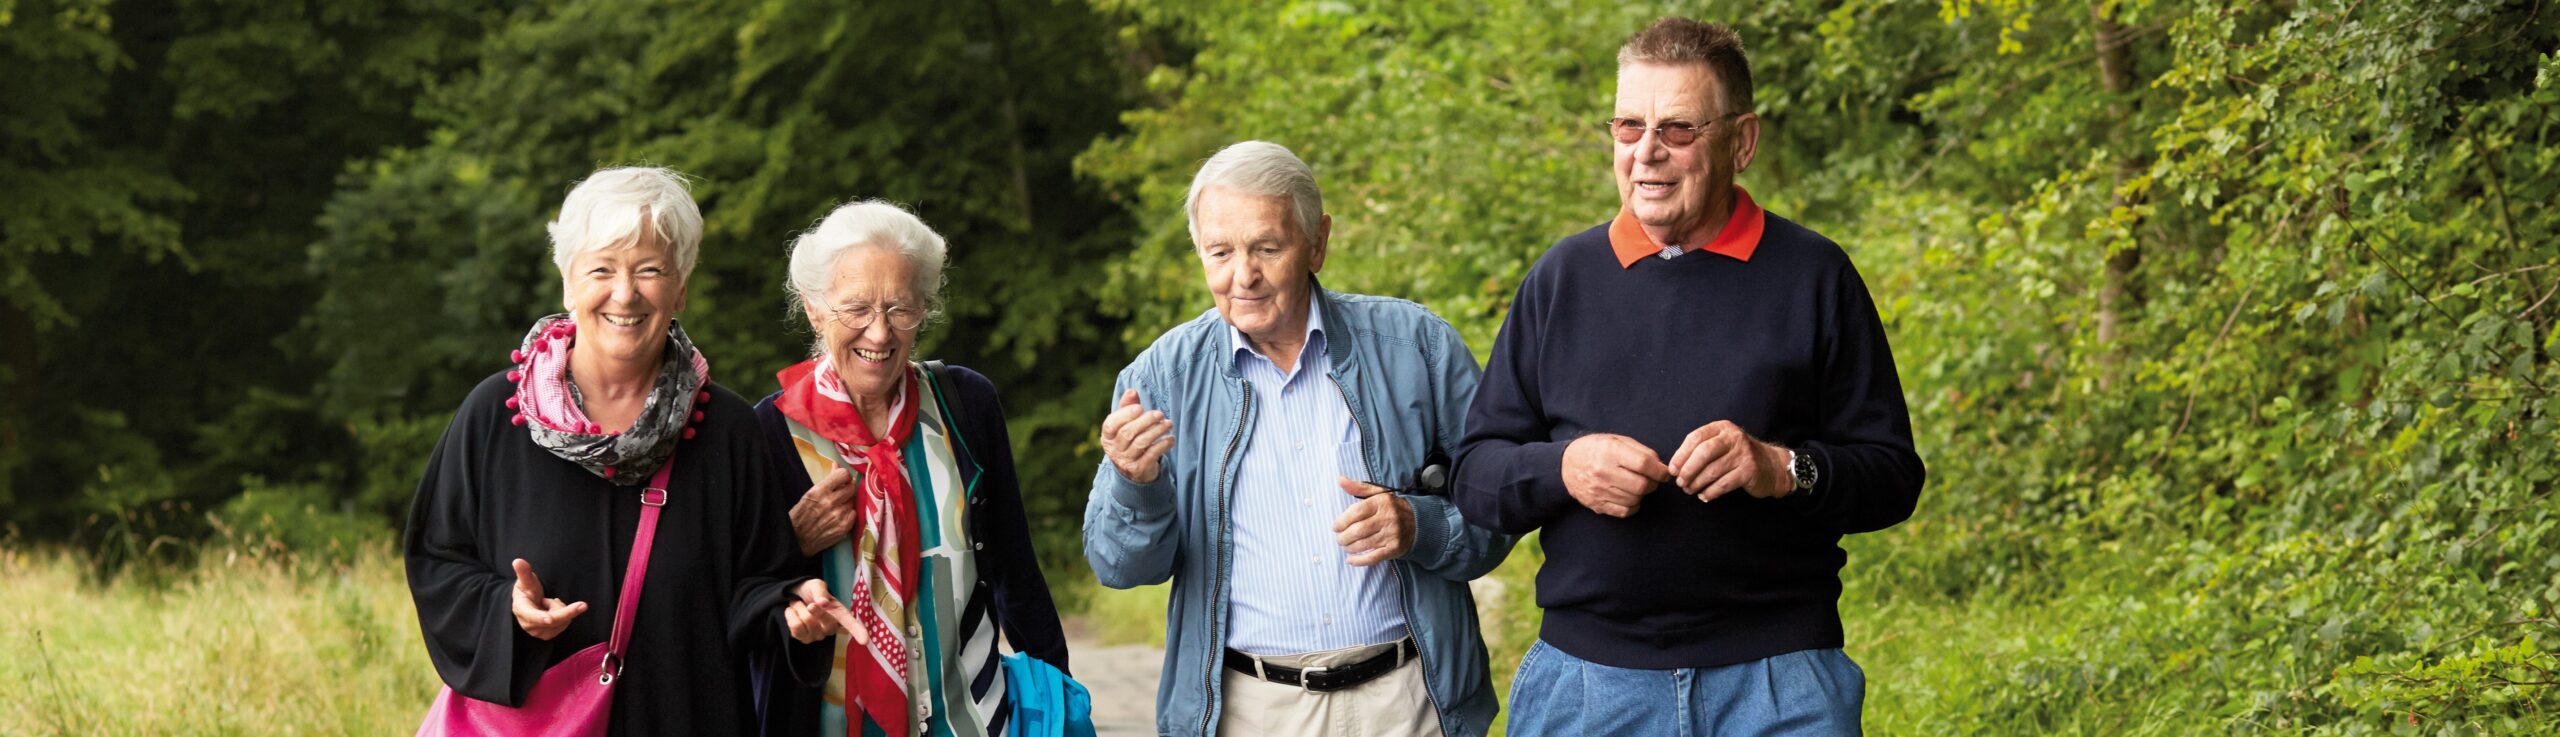 Senioren und Senioren auf gemeinsamen Spaziergang